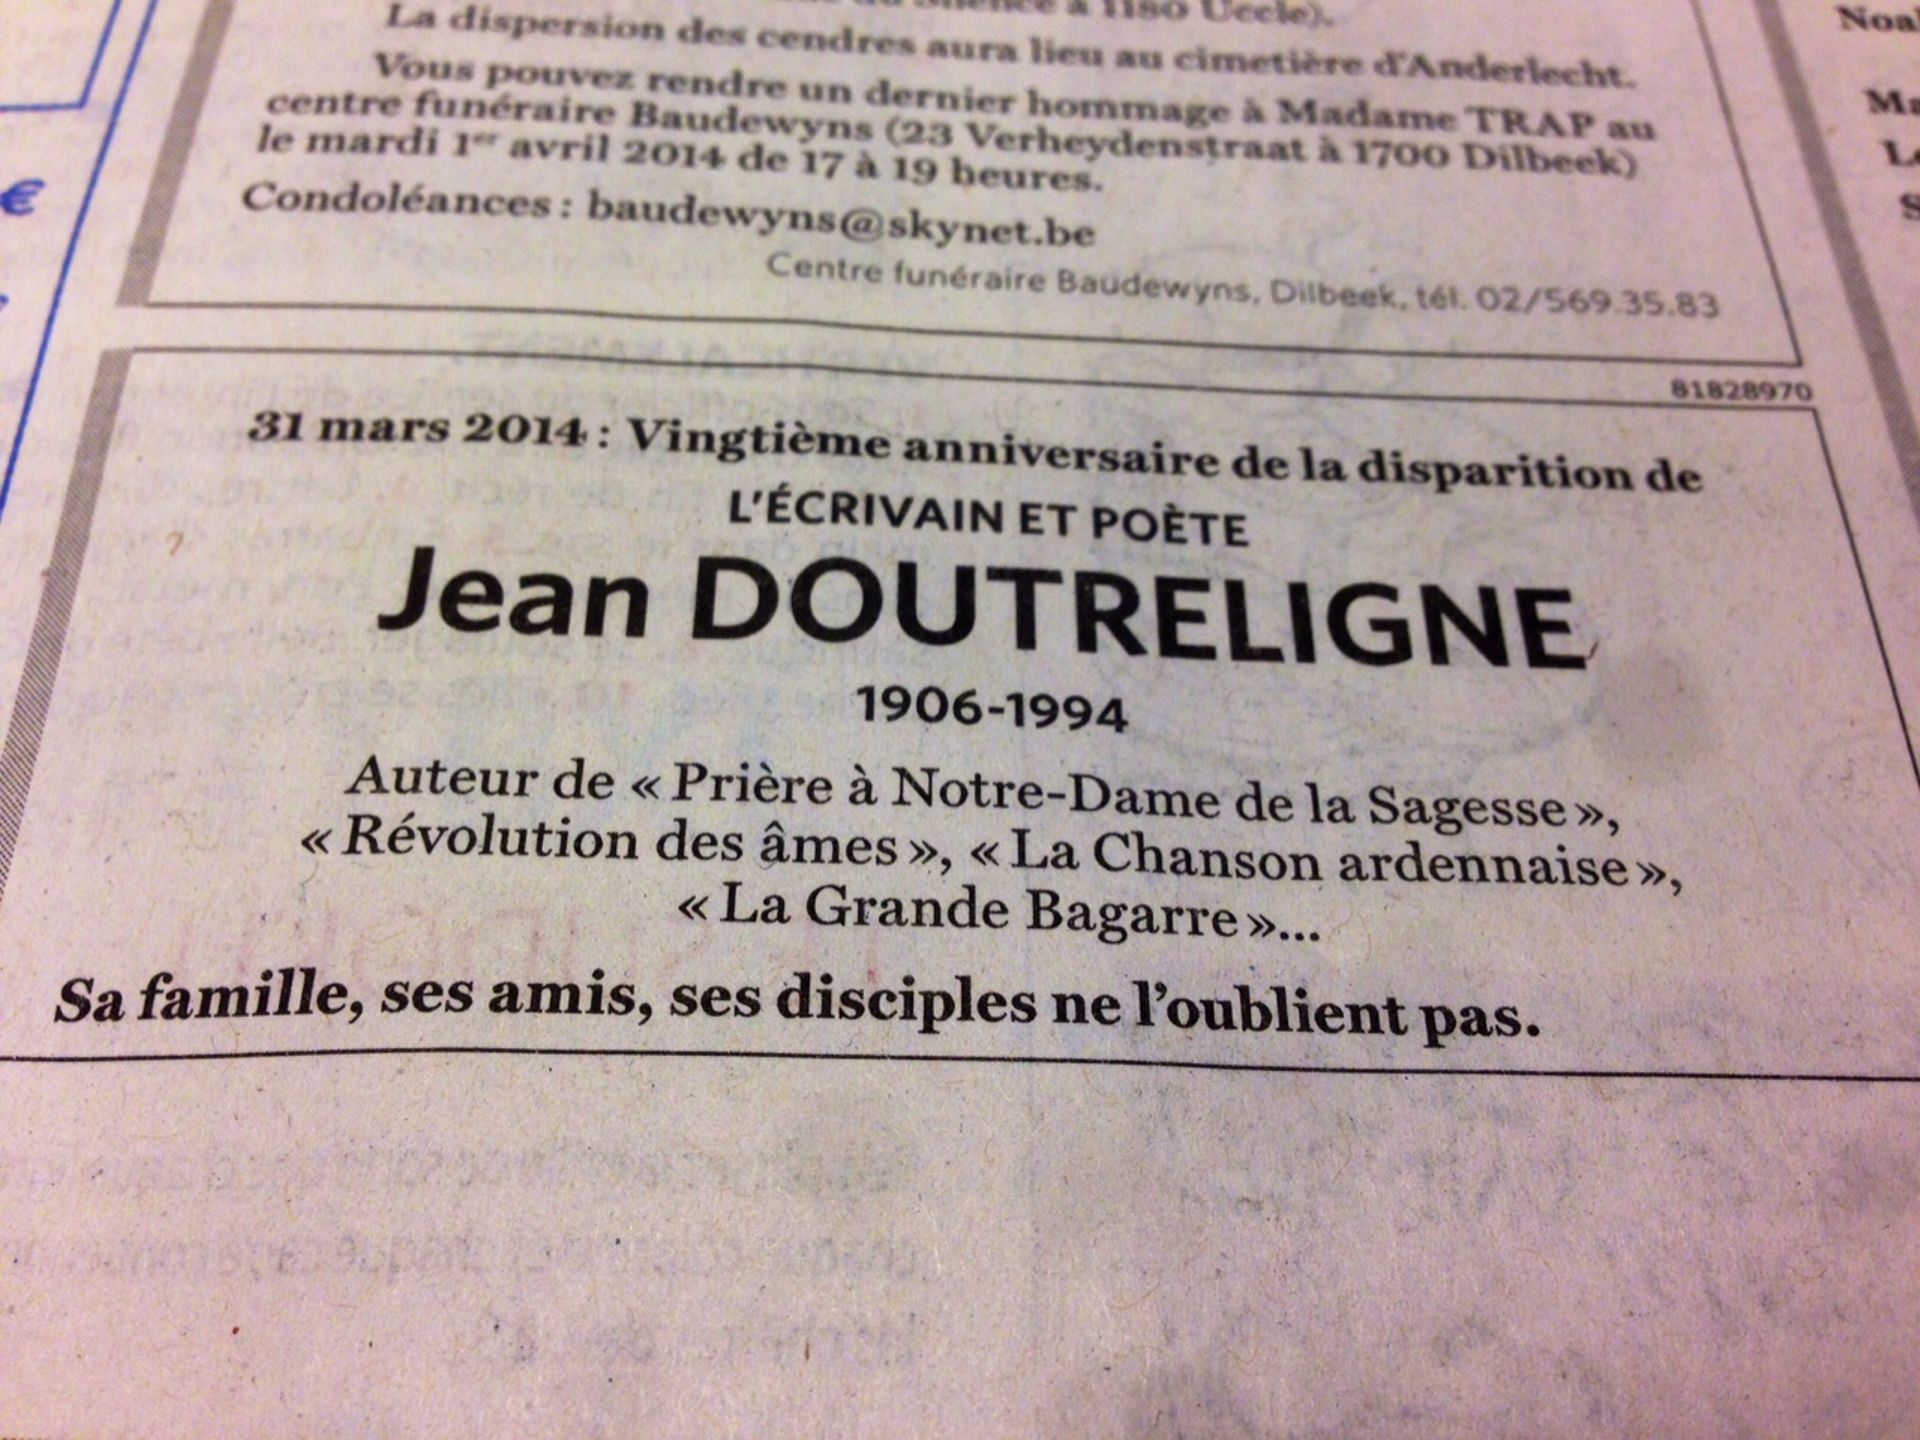 Un hommage à Léon Degerlle, paru dans des quotidiens belges